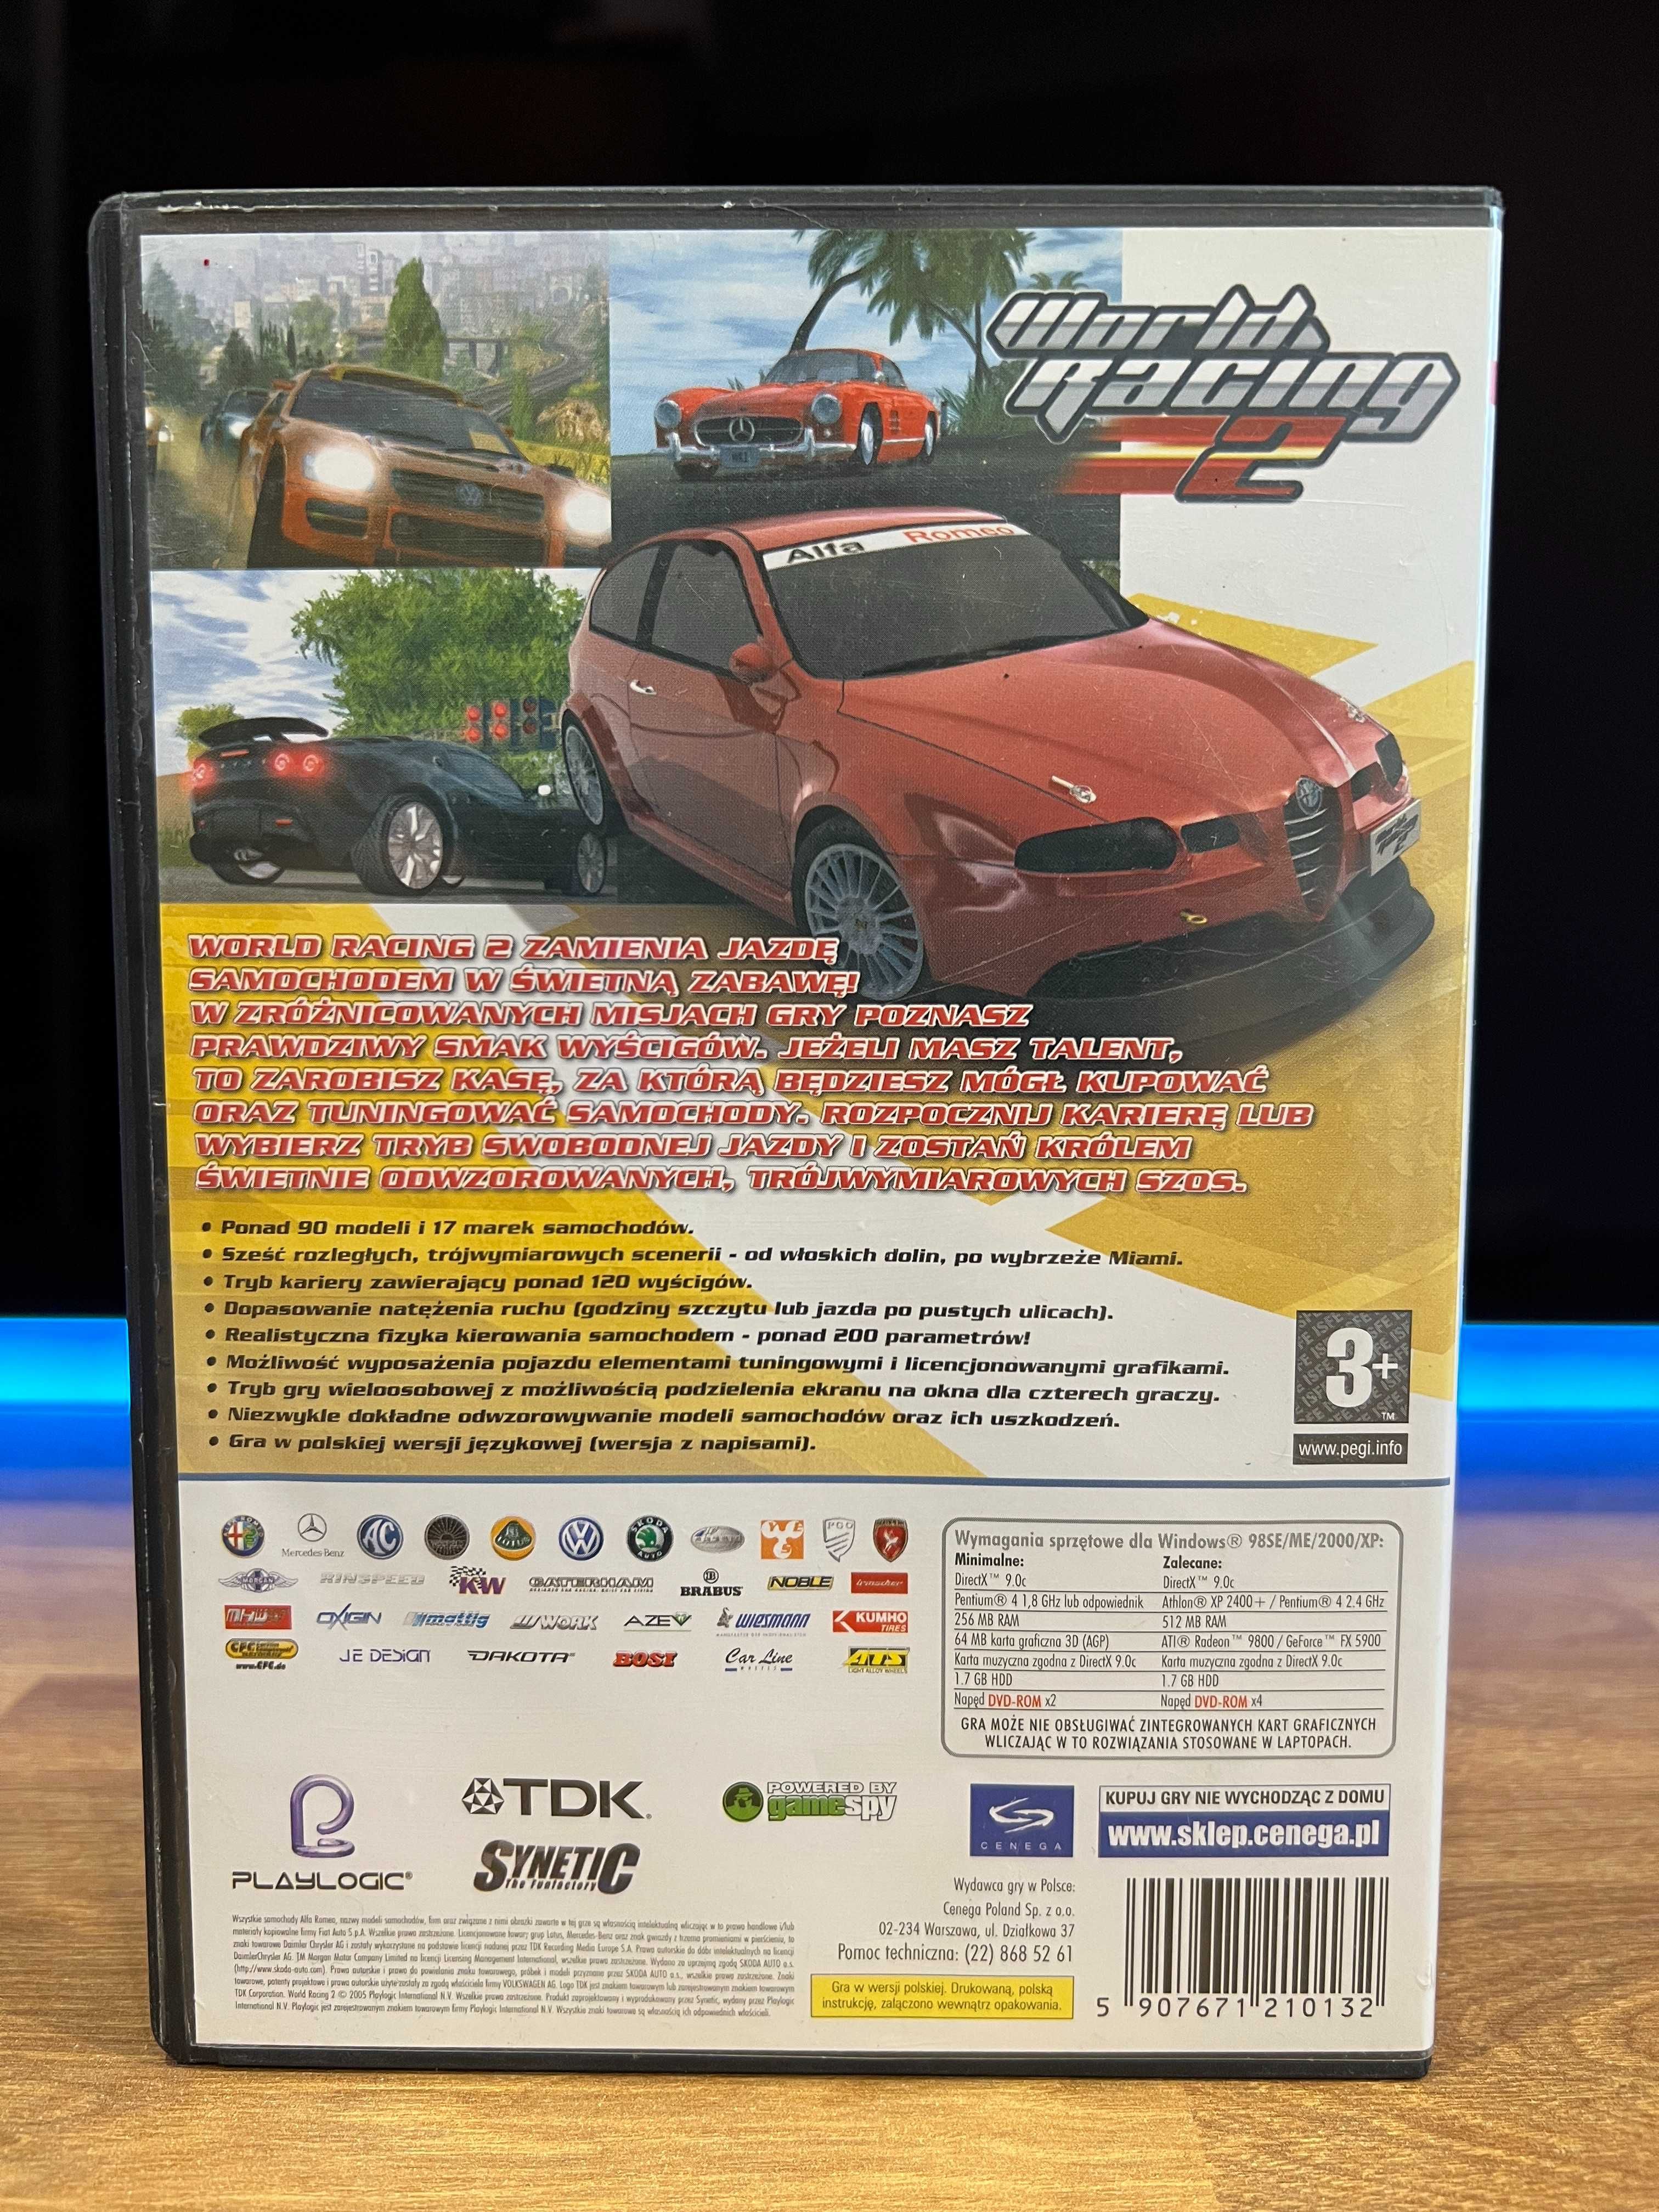 World Racing 2 gra (PC PL 2005) DVD BOX premierowe wydanie